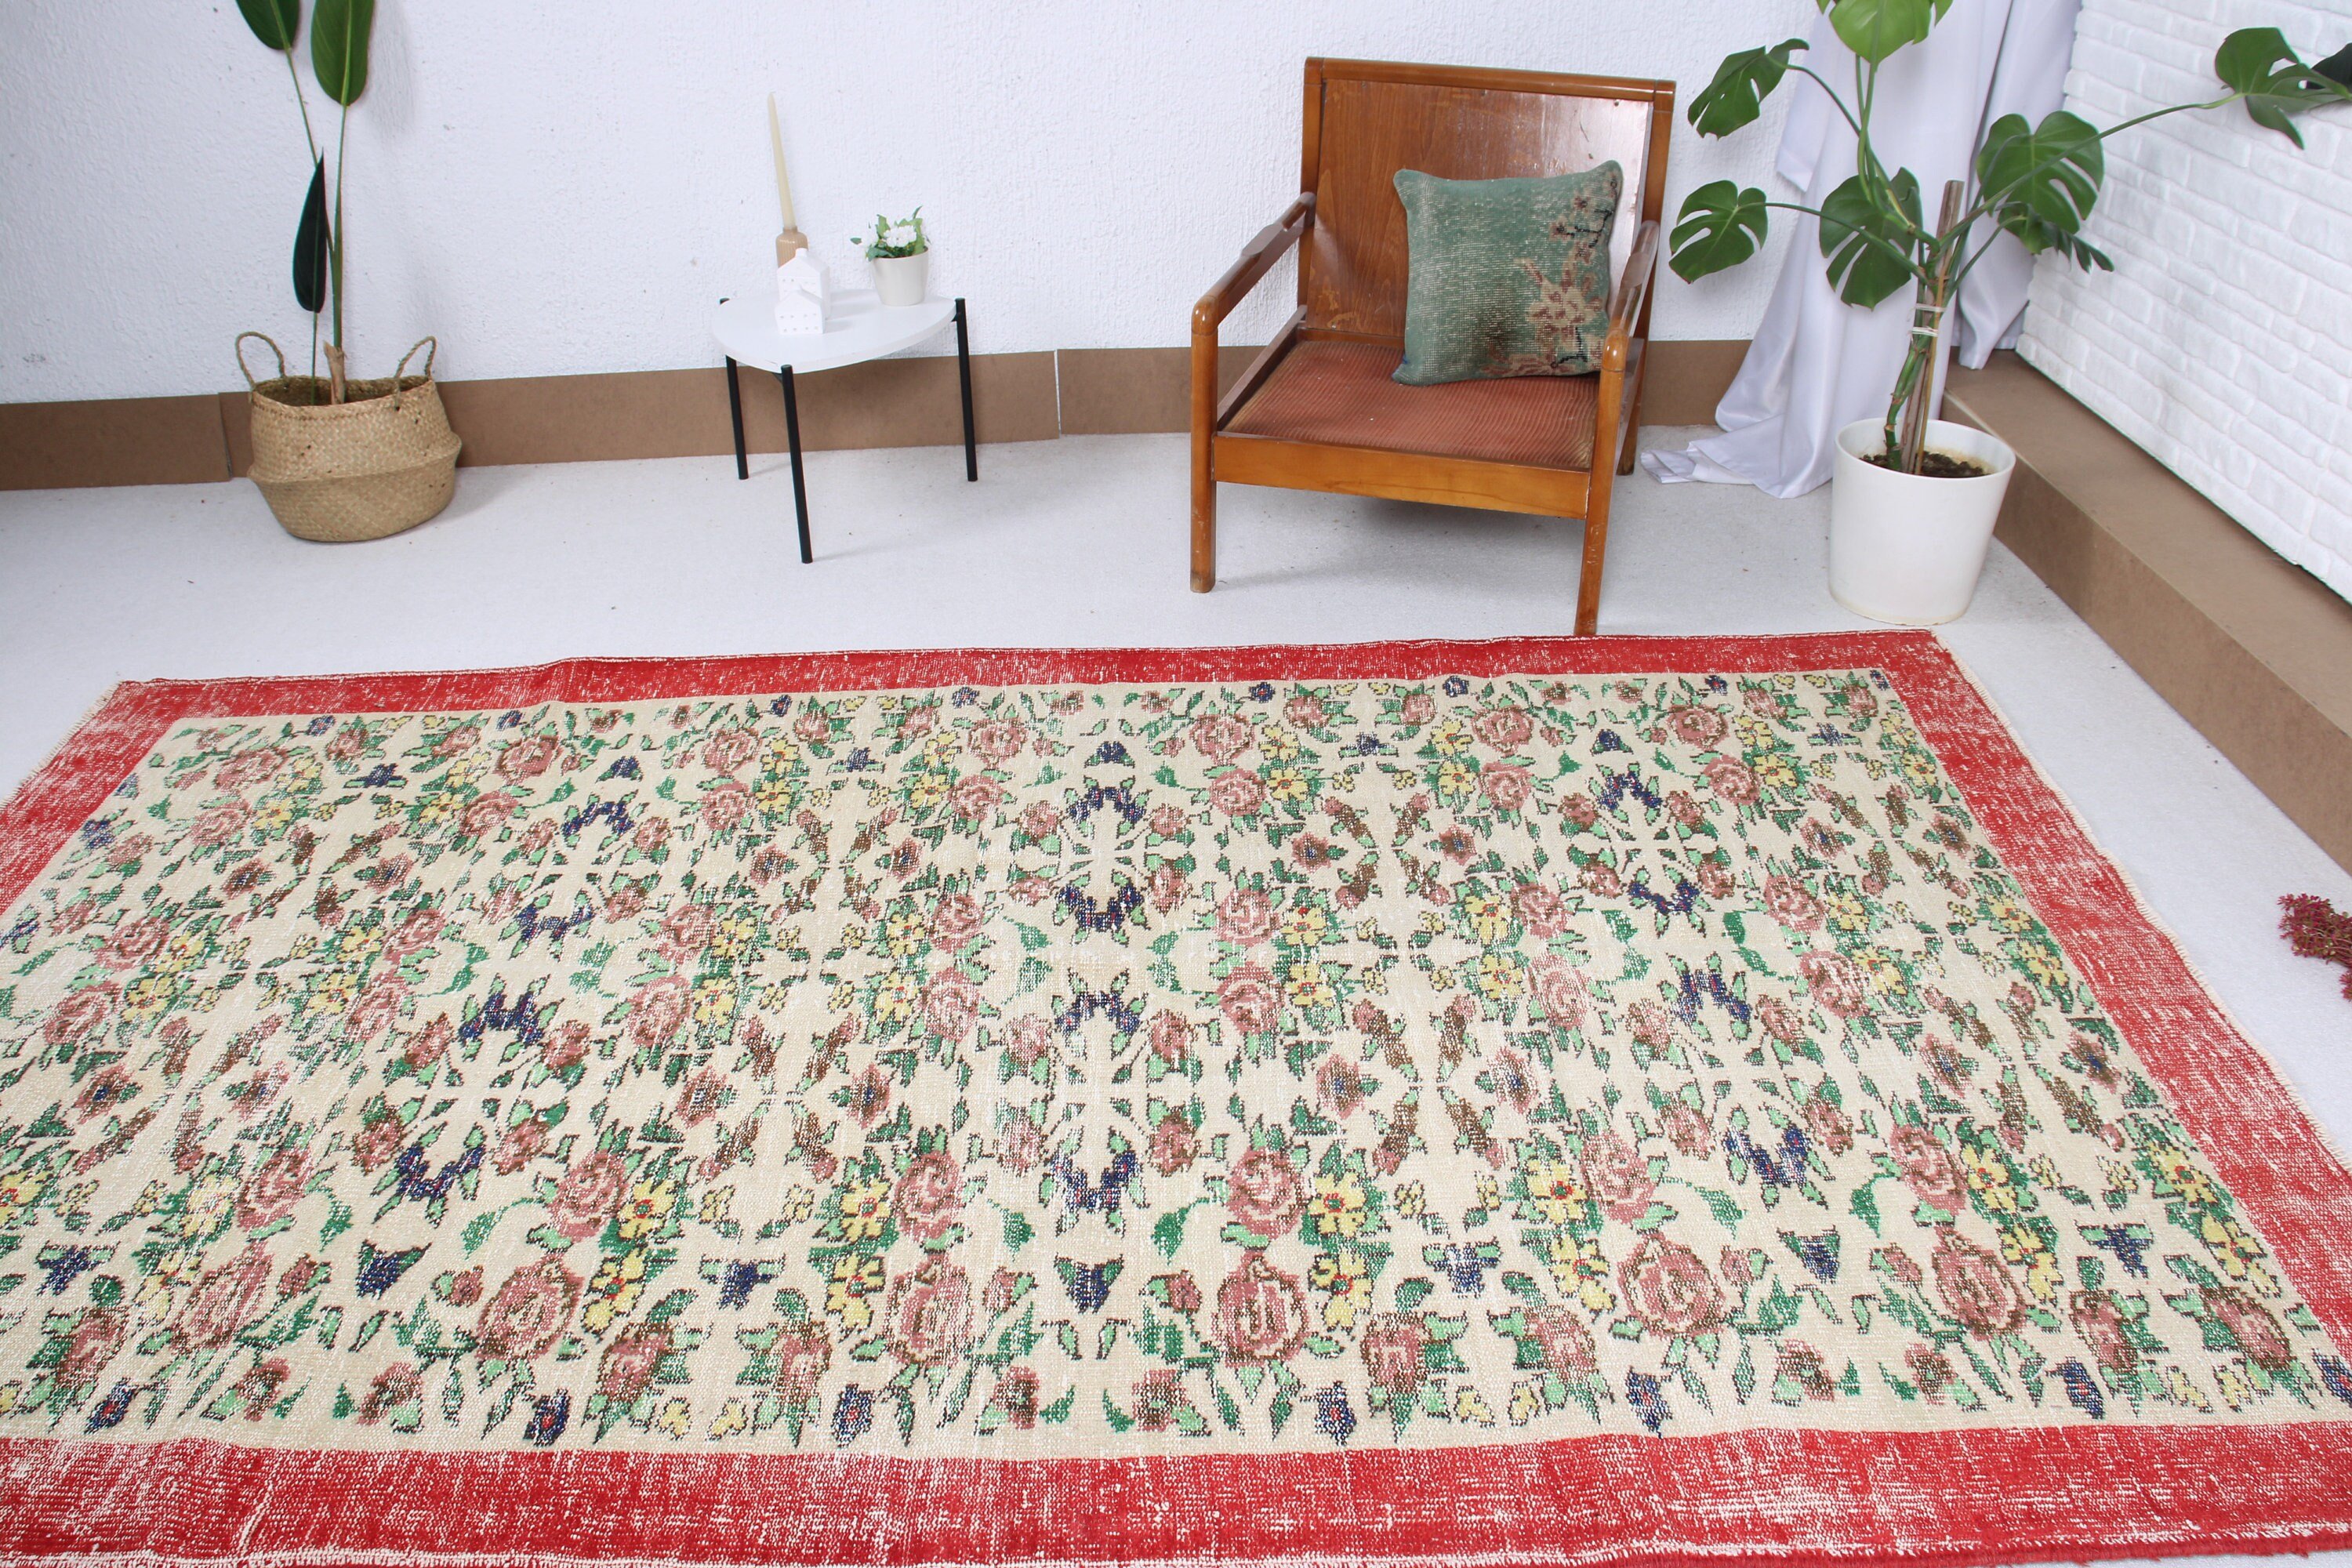 Turkish Rug, Floor Rug, Living Room Rug, Moroccan Rugs, 5.4x9.5 ft Large Rug, Beige Antique Rugs, Vintage Rugs, Dining Room Rug, Retro Rugs